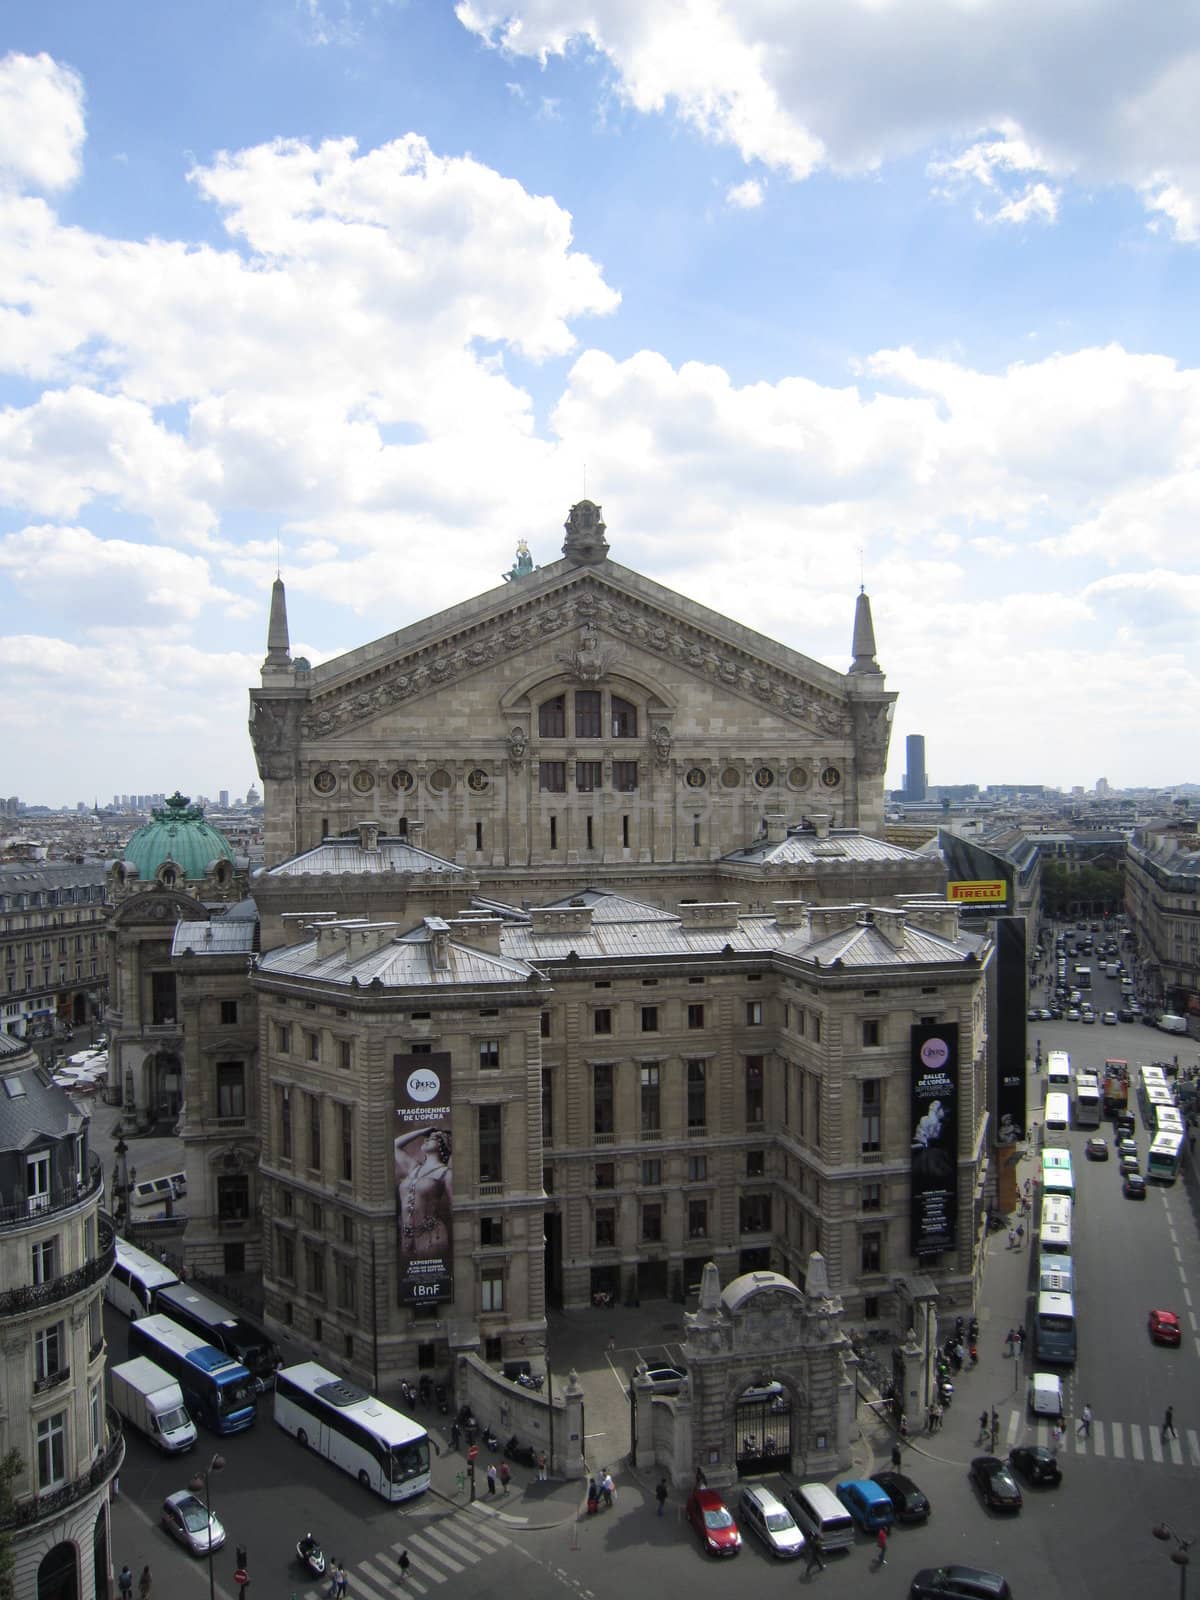 The Opera building in Paris